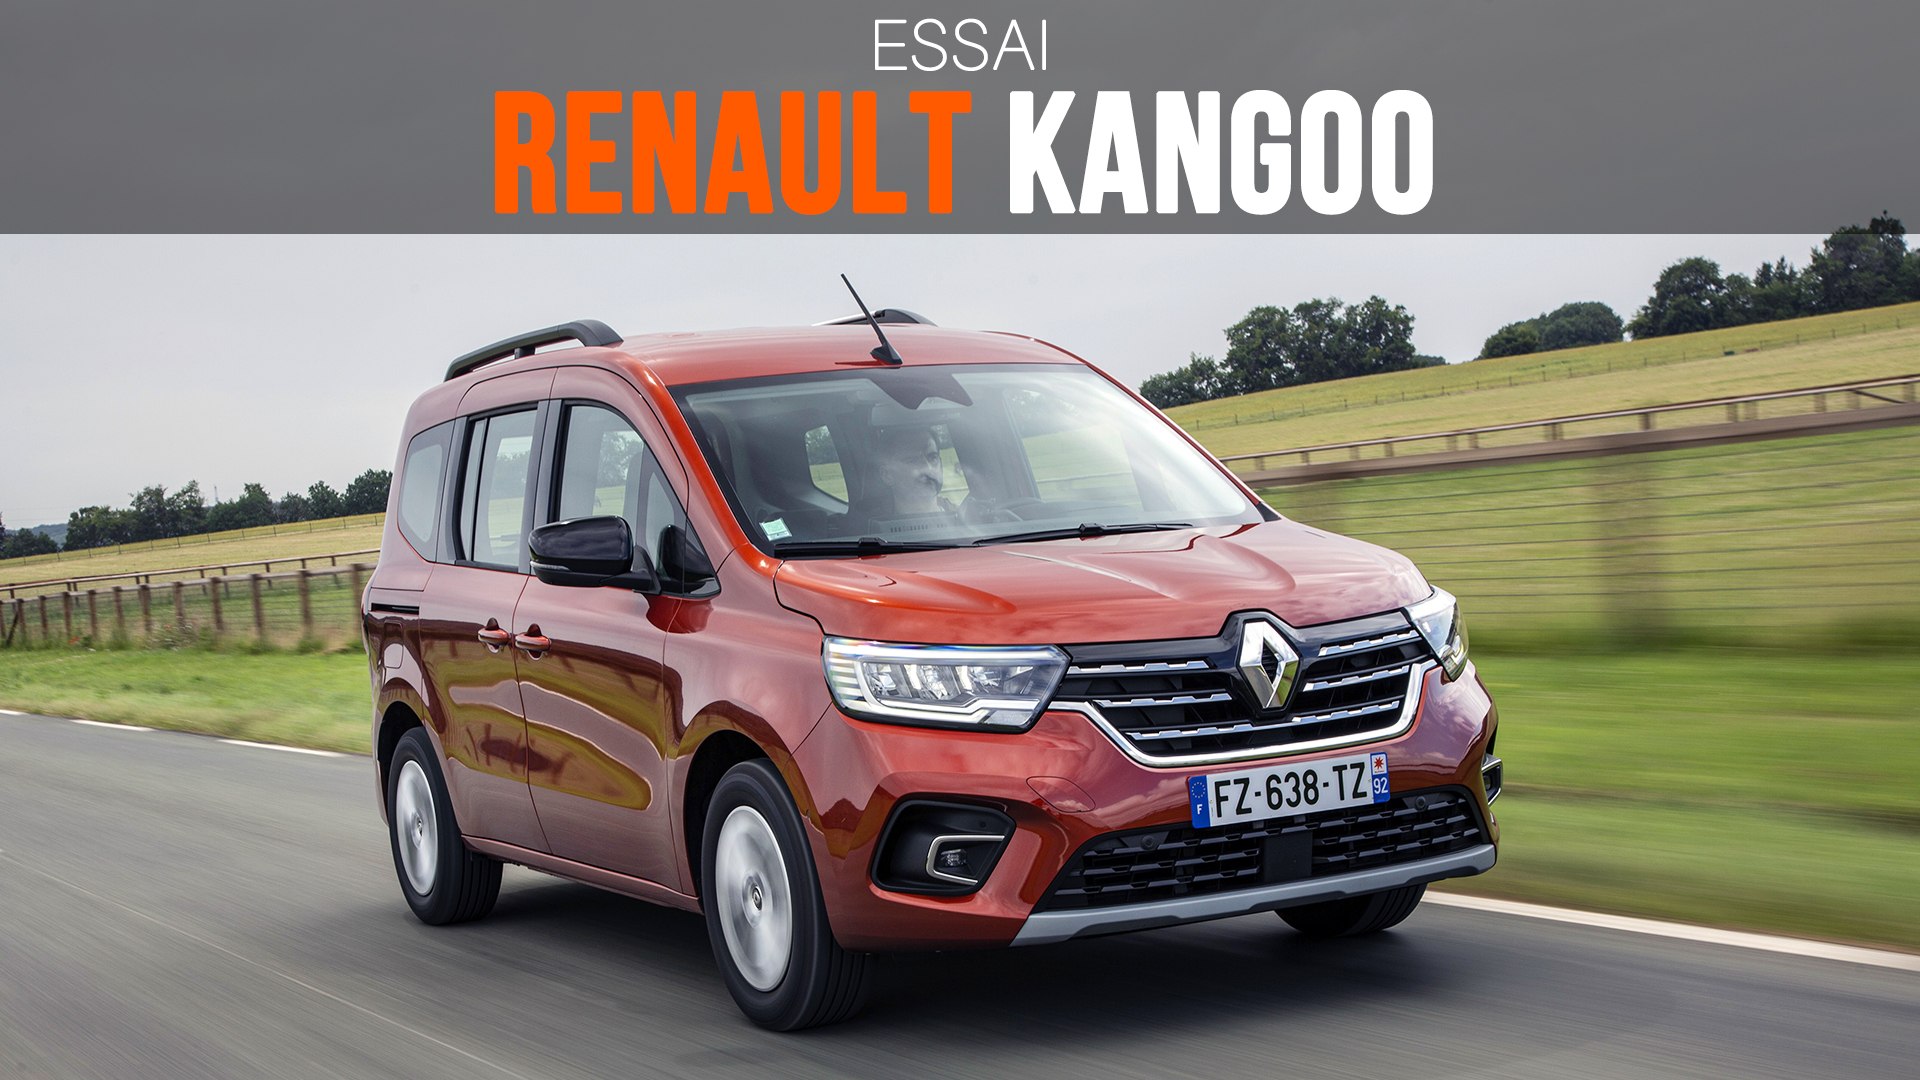 Essai - Renault Kangoo (2021) : retour dans la course 